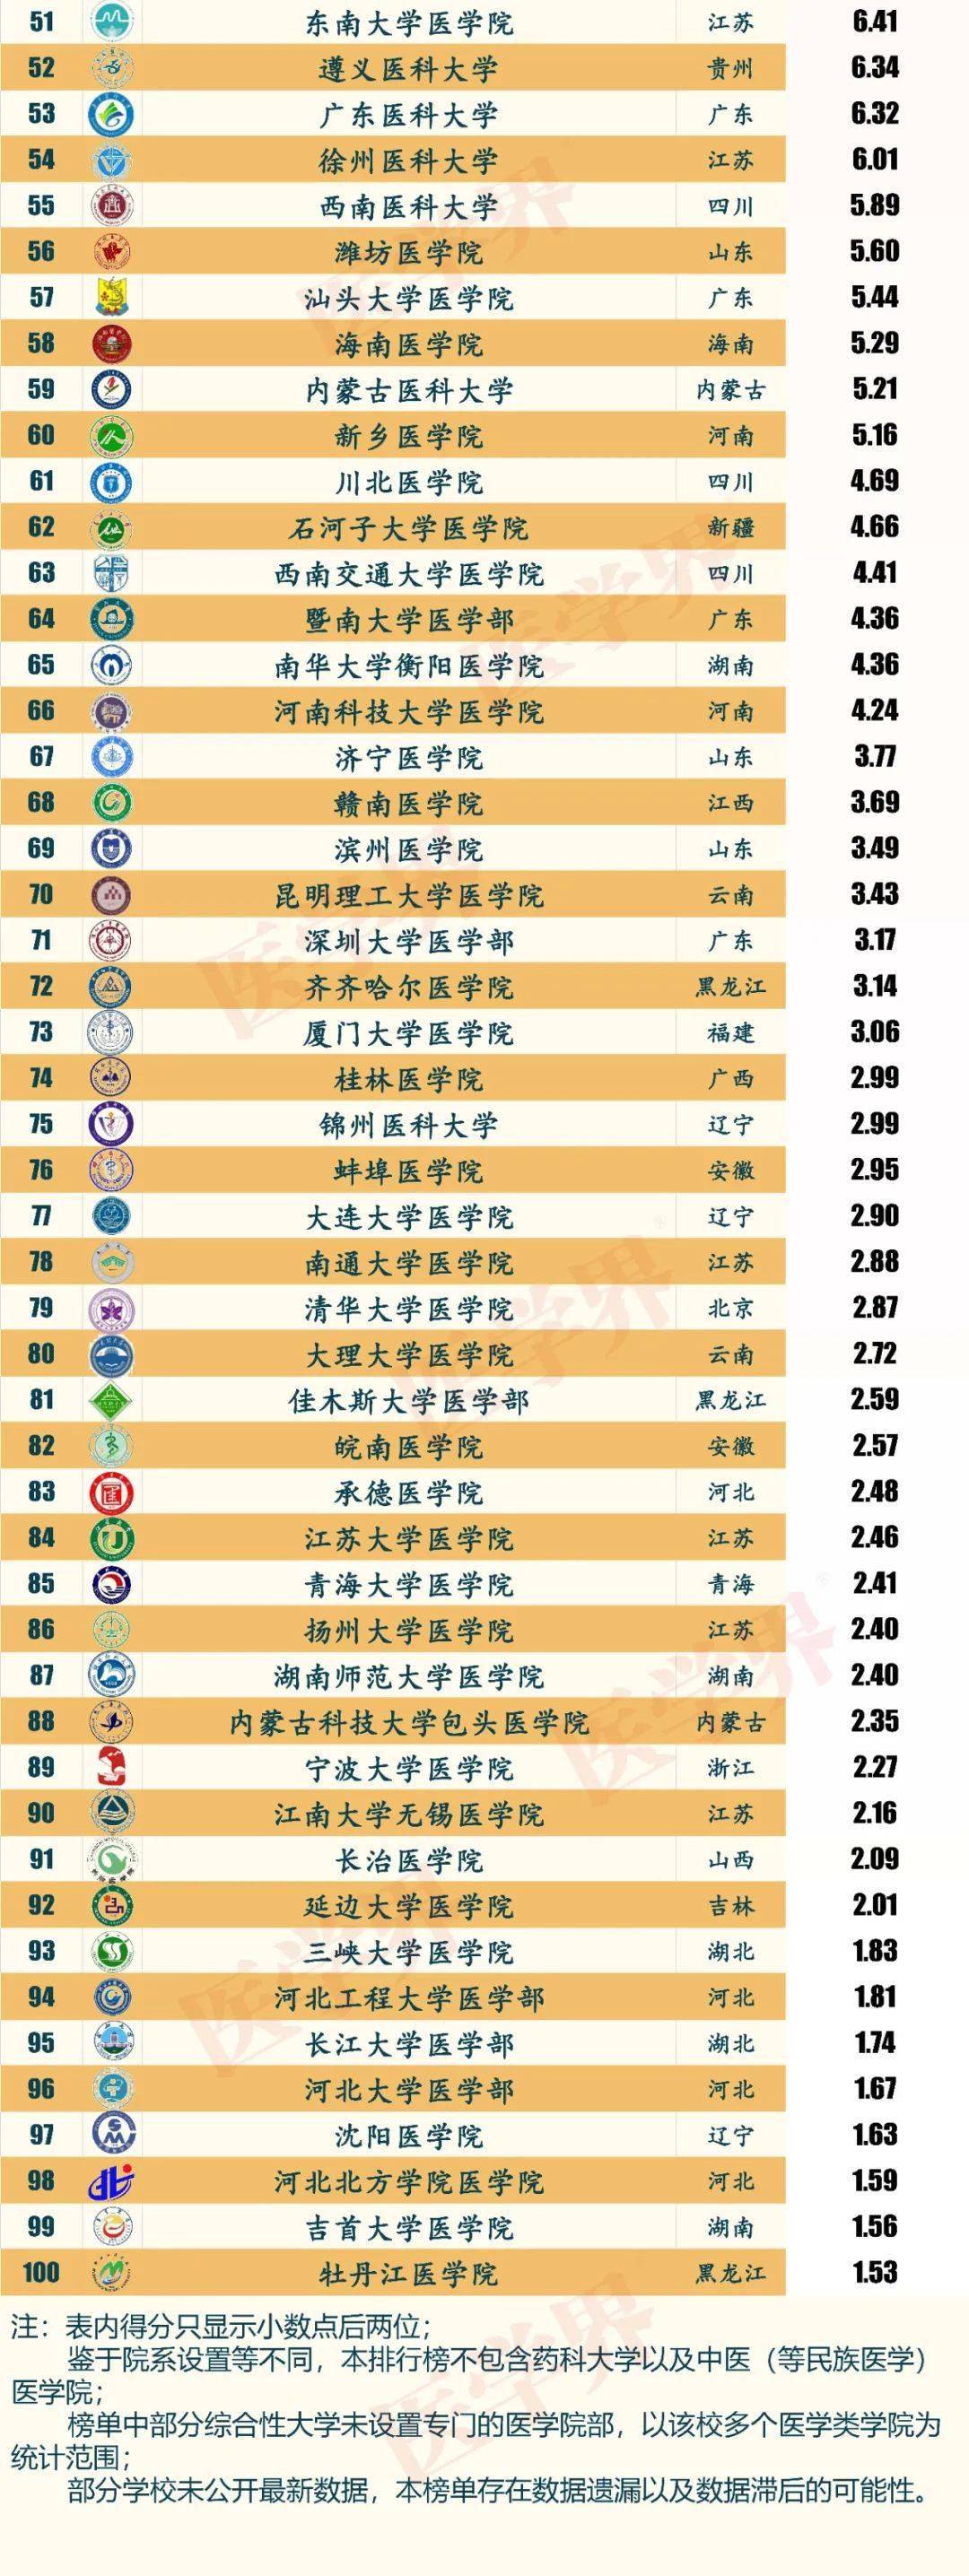 青岛医学院排名2020_2020中国医学院校本科毕业生两院院士数量排行榜